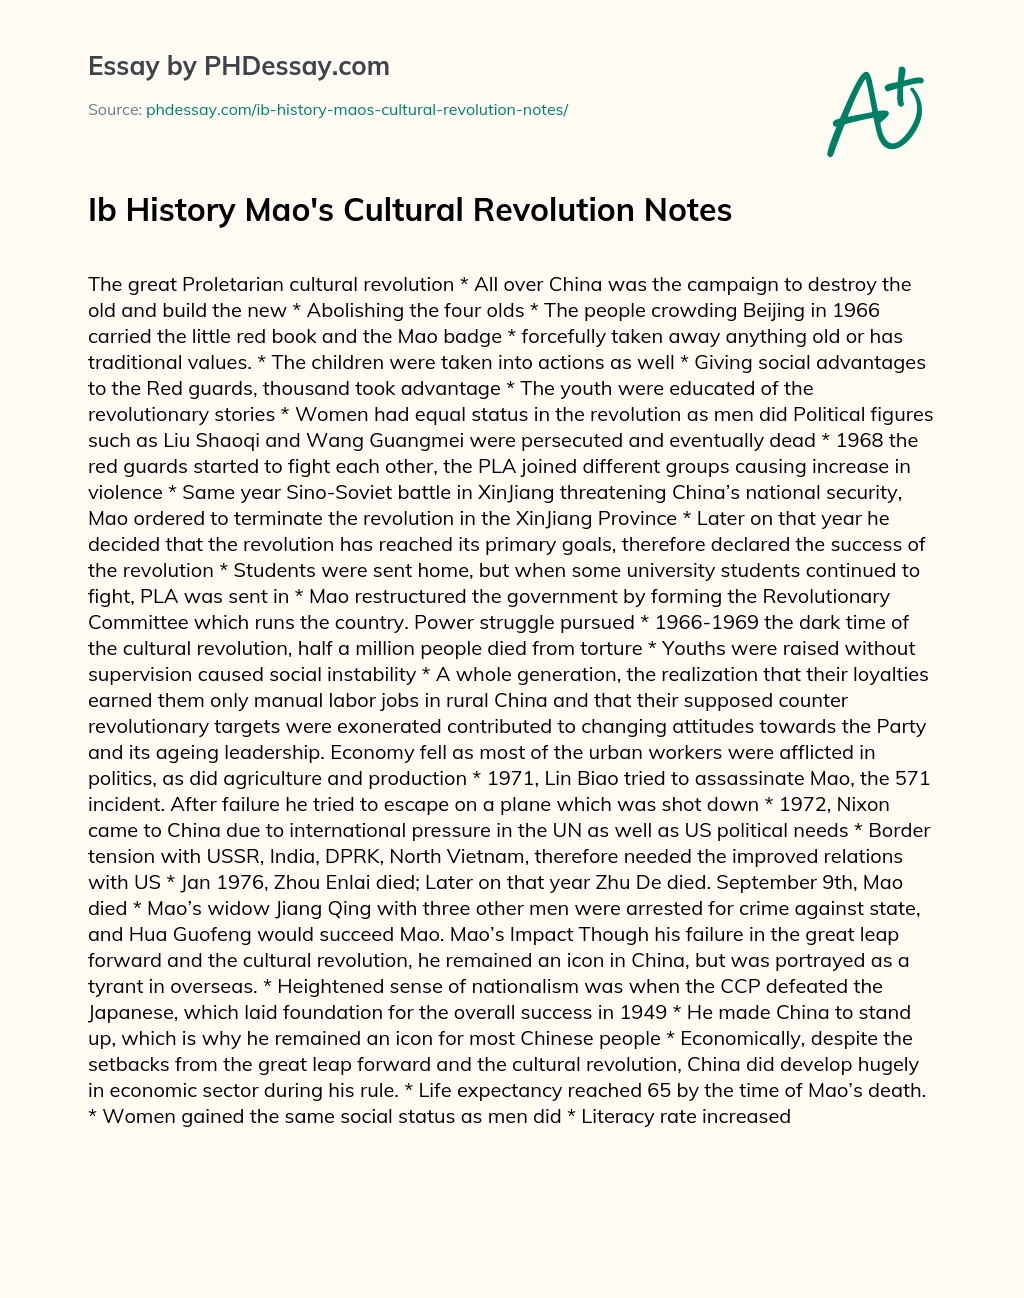 Ib History Mao’s Cultural Revolution Notes essay